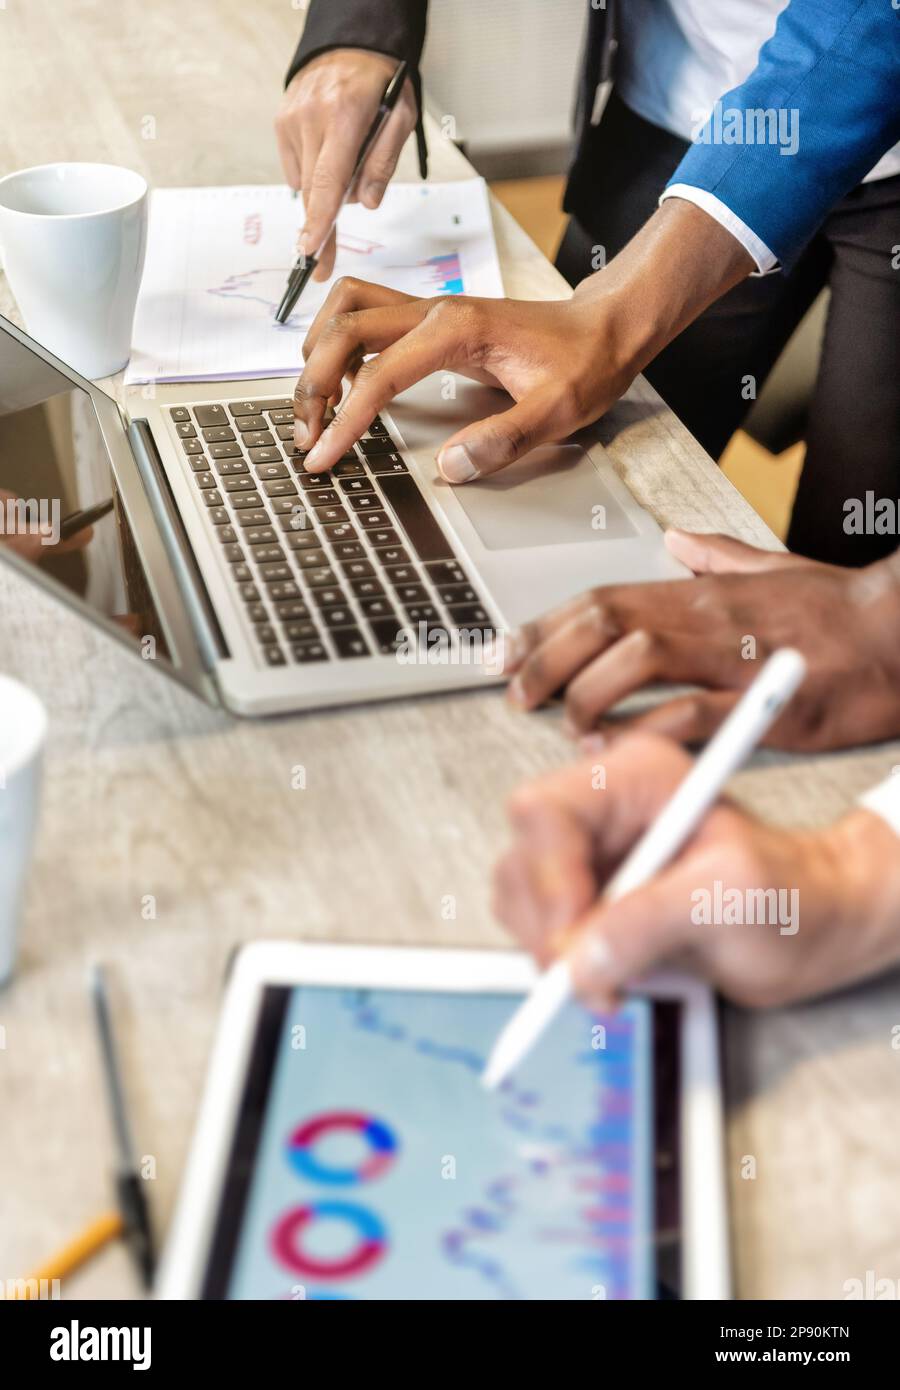 Par-dessus Crop collègues anonymes travaillant sur la stratégie d'entreprise à l'aide d'un ordinateur portable et d'une tablette avec des diagrammes pendant la collaboration au bureau Banque D'Images